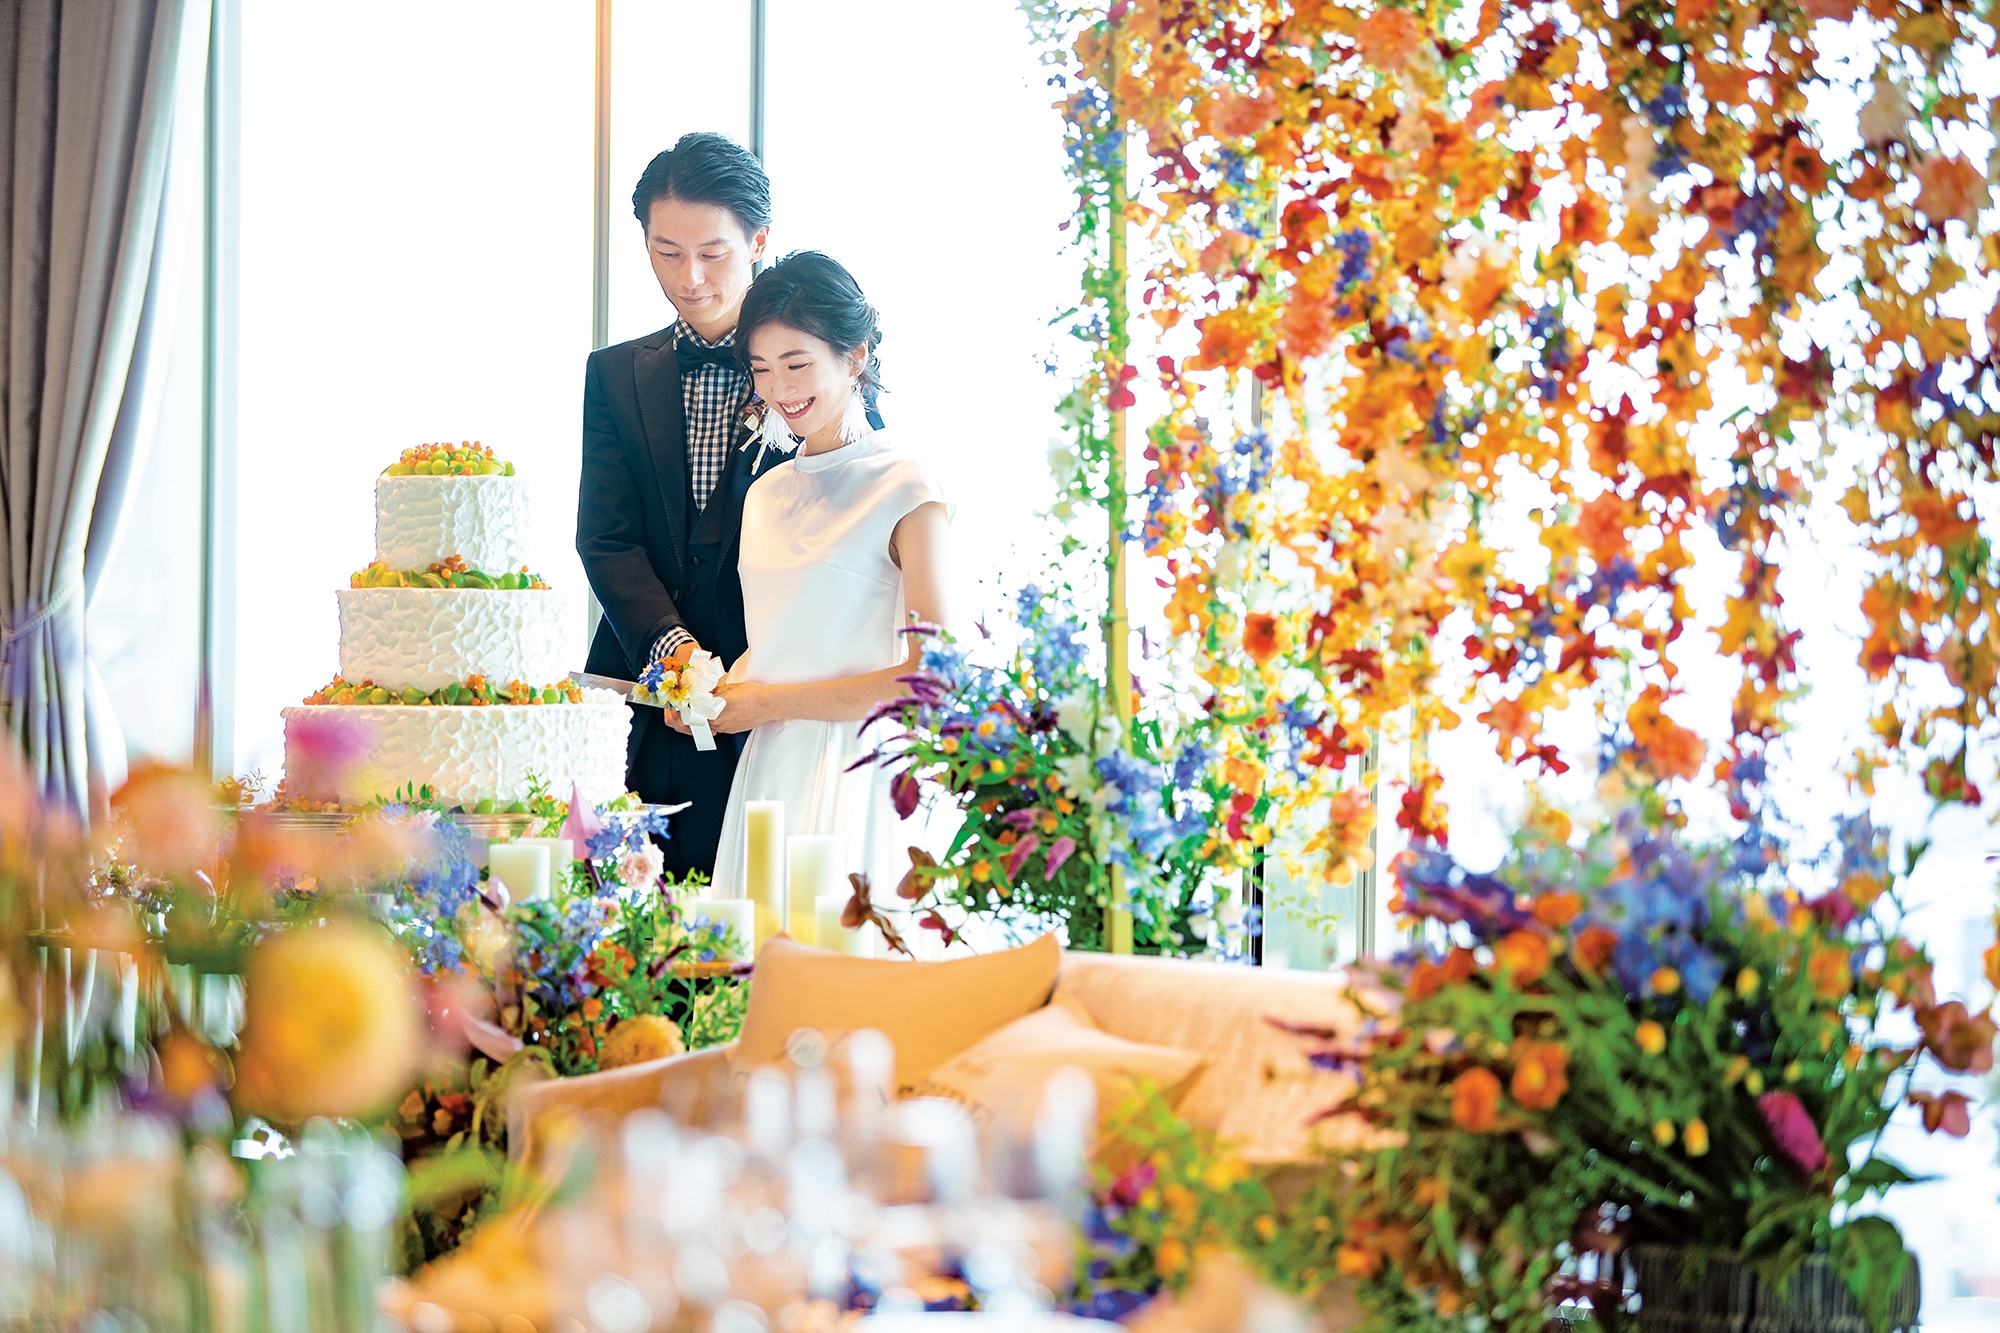 「＃ホテルオークラ京都花嫁」で素敵な瞬間を共有しよう♪